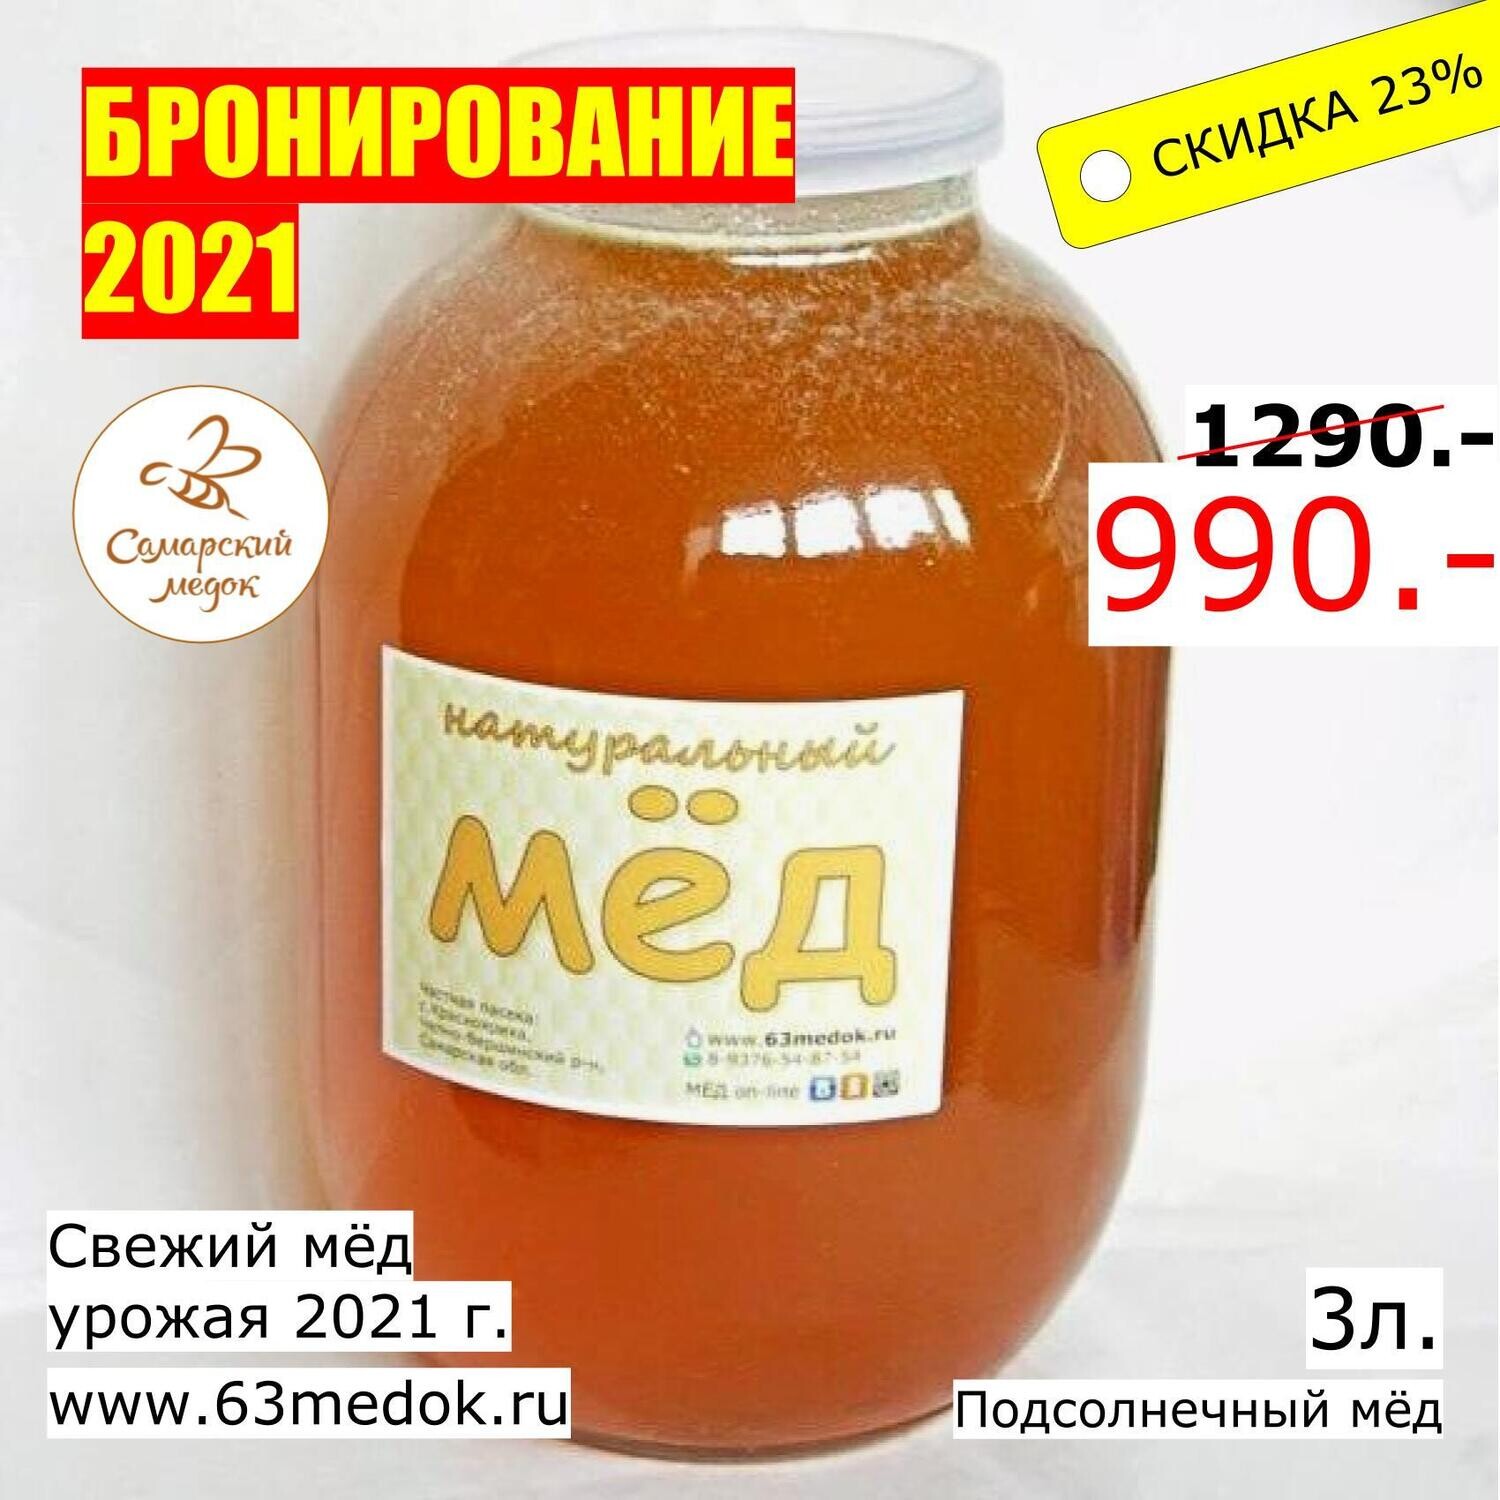 БРОНИРОВАНИЕ 2021 - Подсолнечный - 3л. свежего мёда